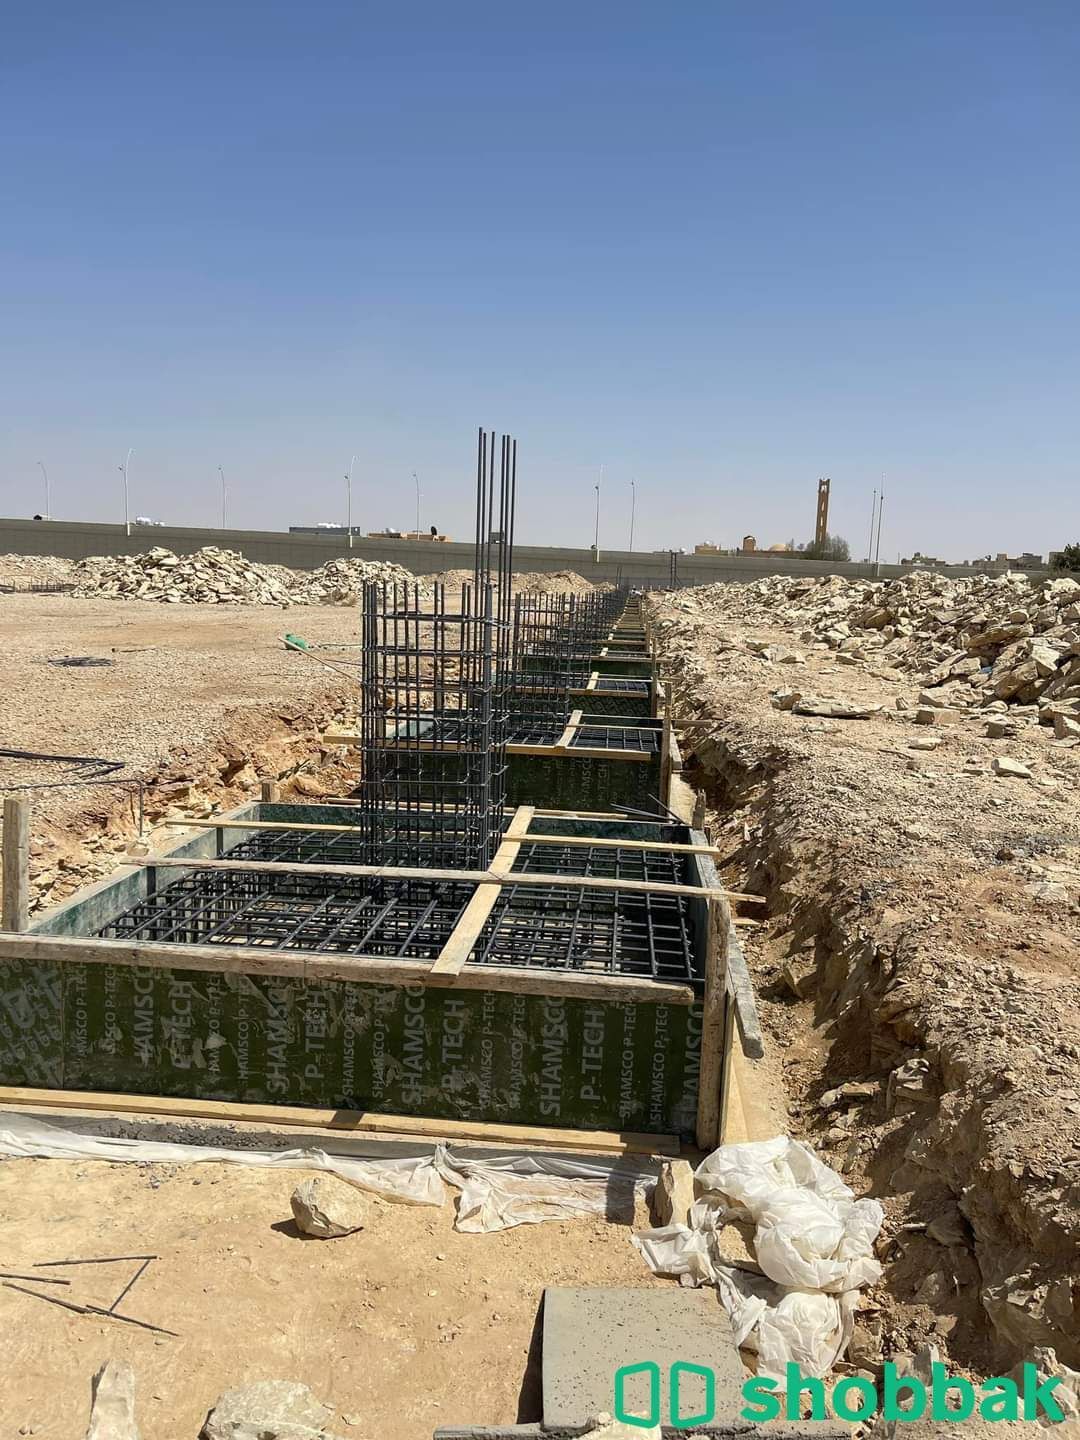 مقاولات عامة بناء وترميم  Shobbak Saudi Arabia